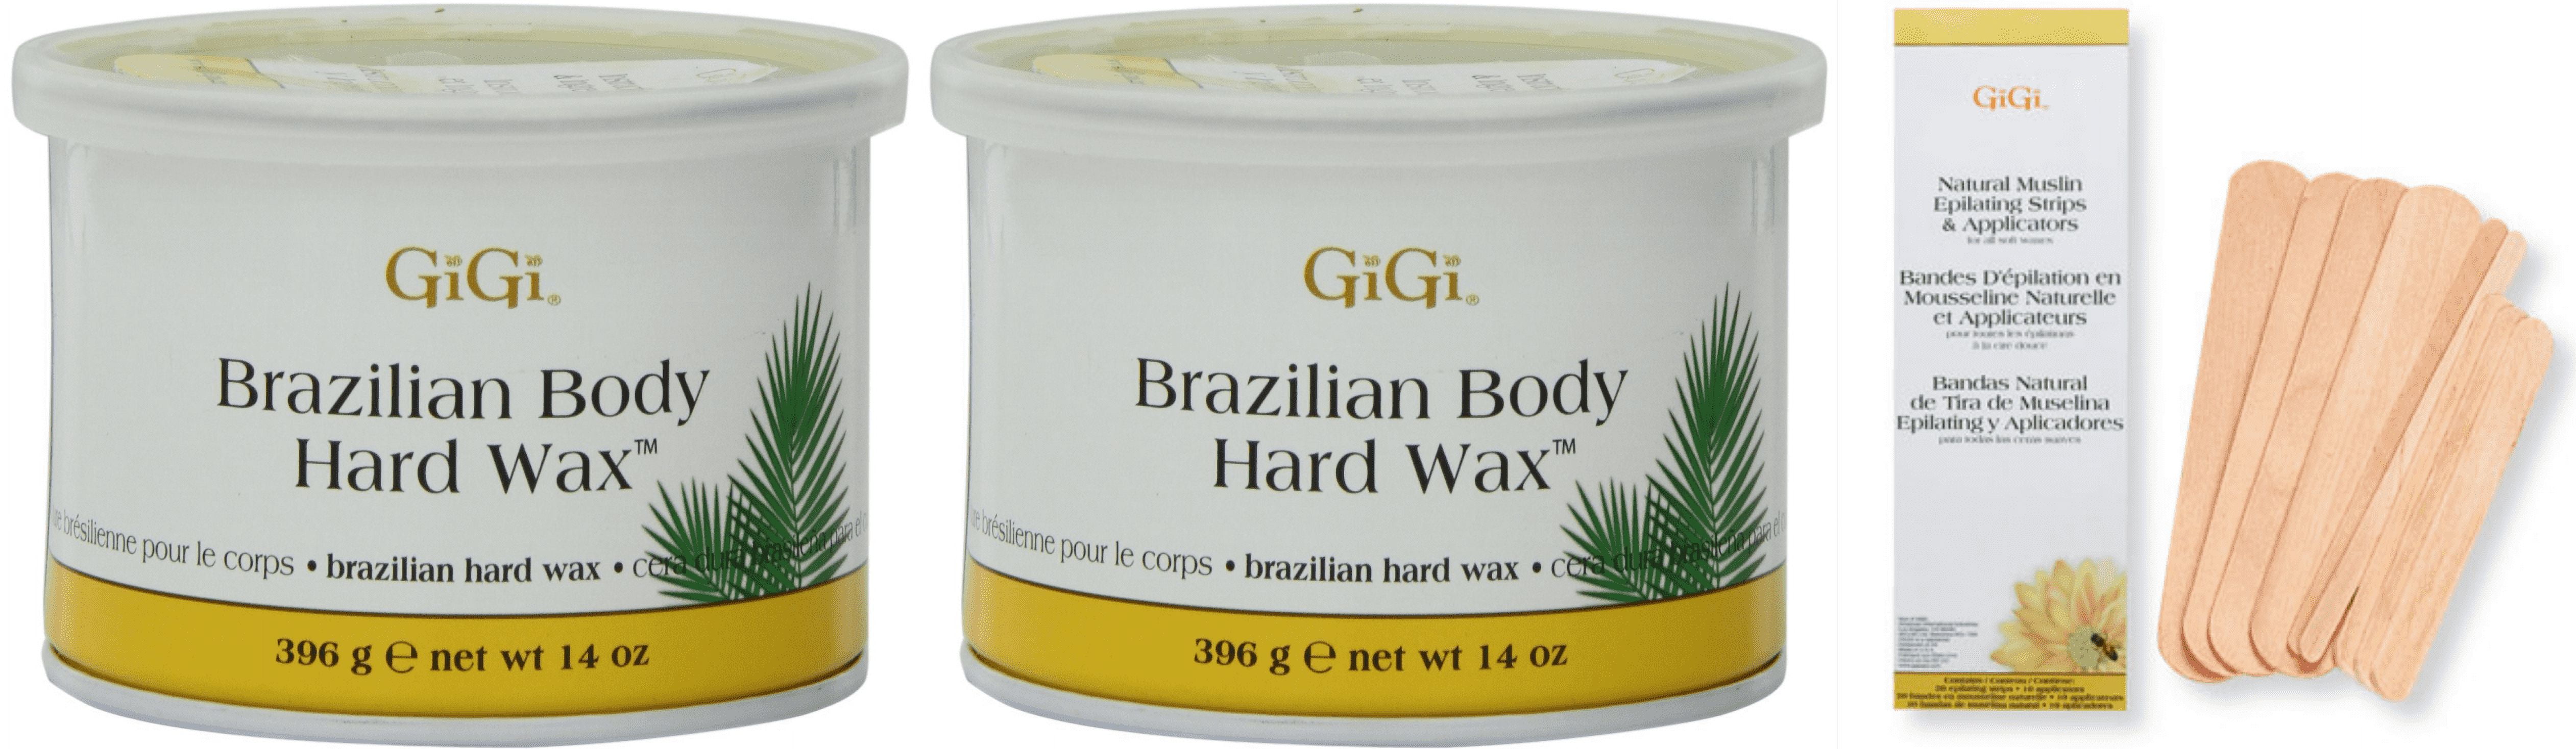 Gigi Brazilian Body Hard Wax 14 Oz